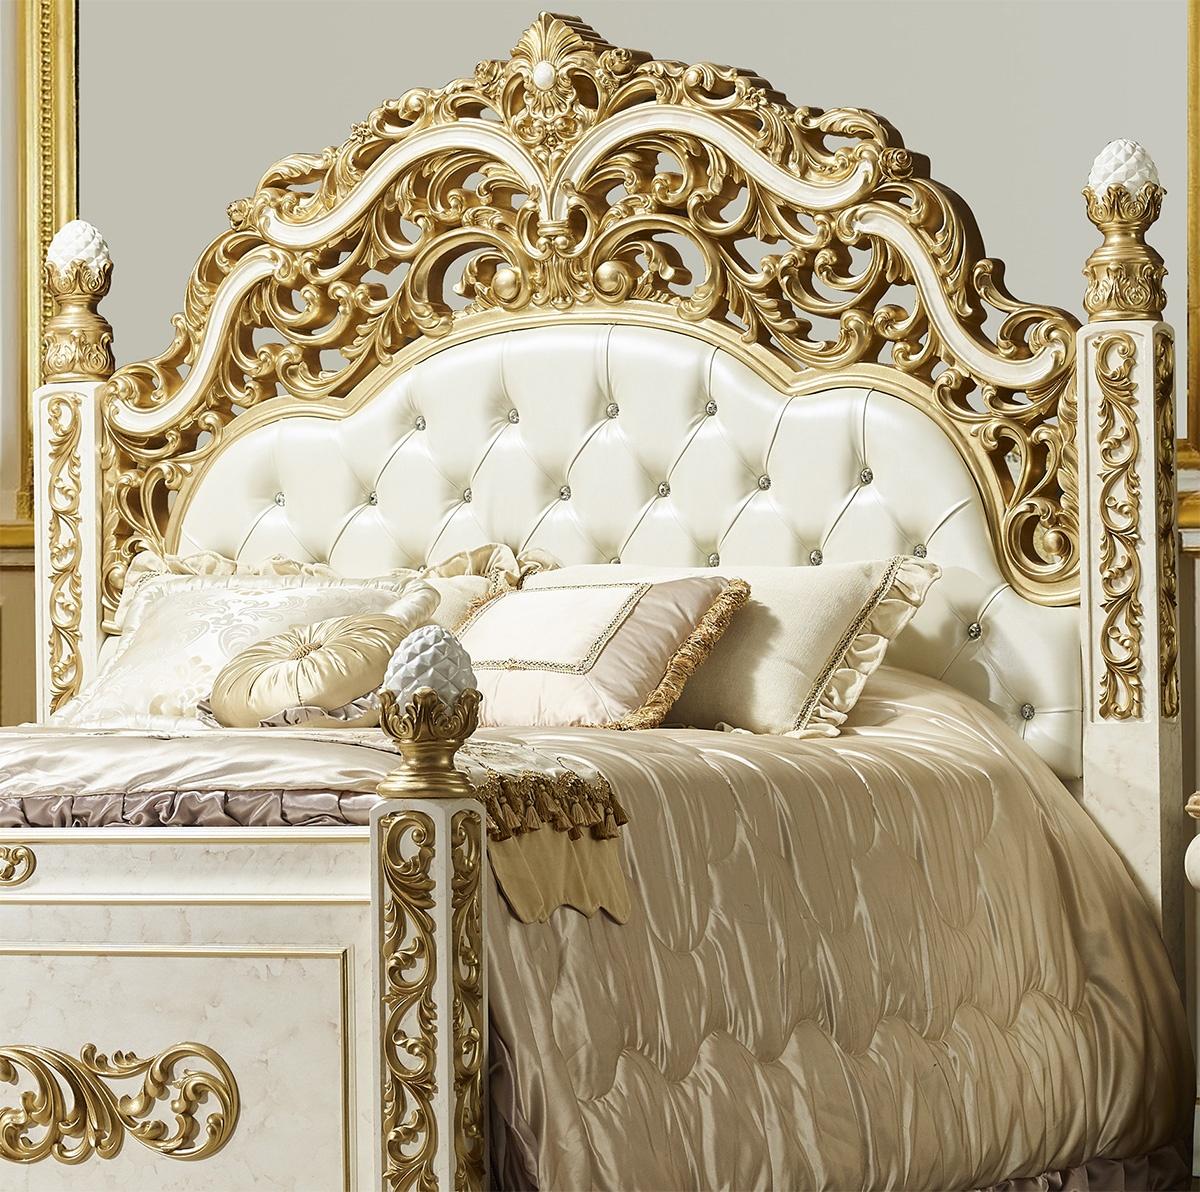 

    
Homey Design Furniture HD-903-EK-BED-3PC Panel Bedroom Set Antique White/Gold HD-903-EK-BED-3PC
